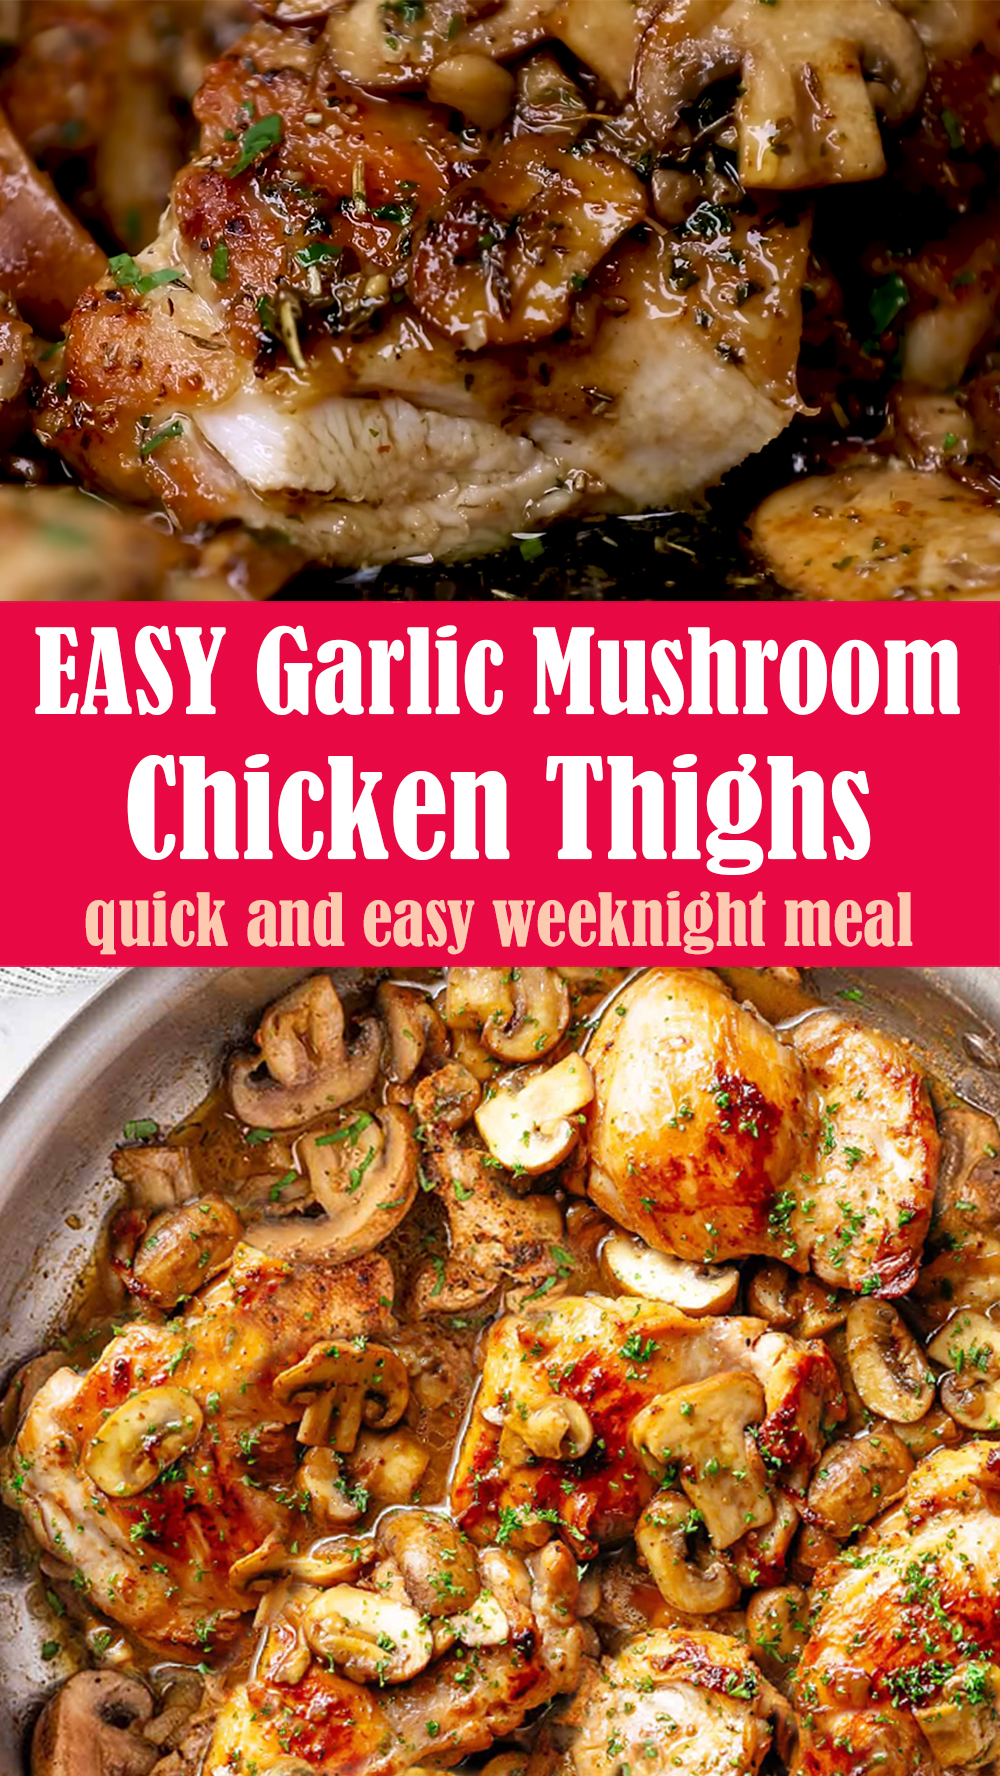 EASY Garlic Mushroom Chicken Thighs